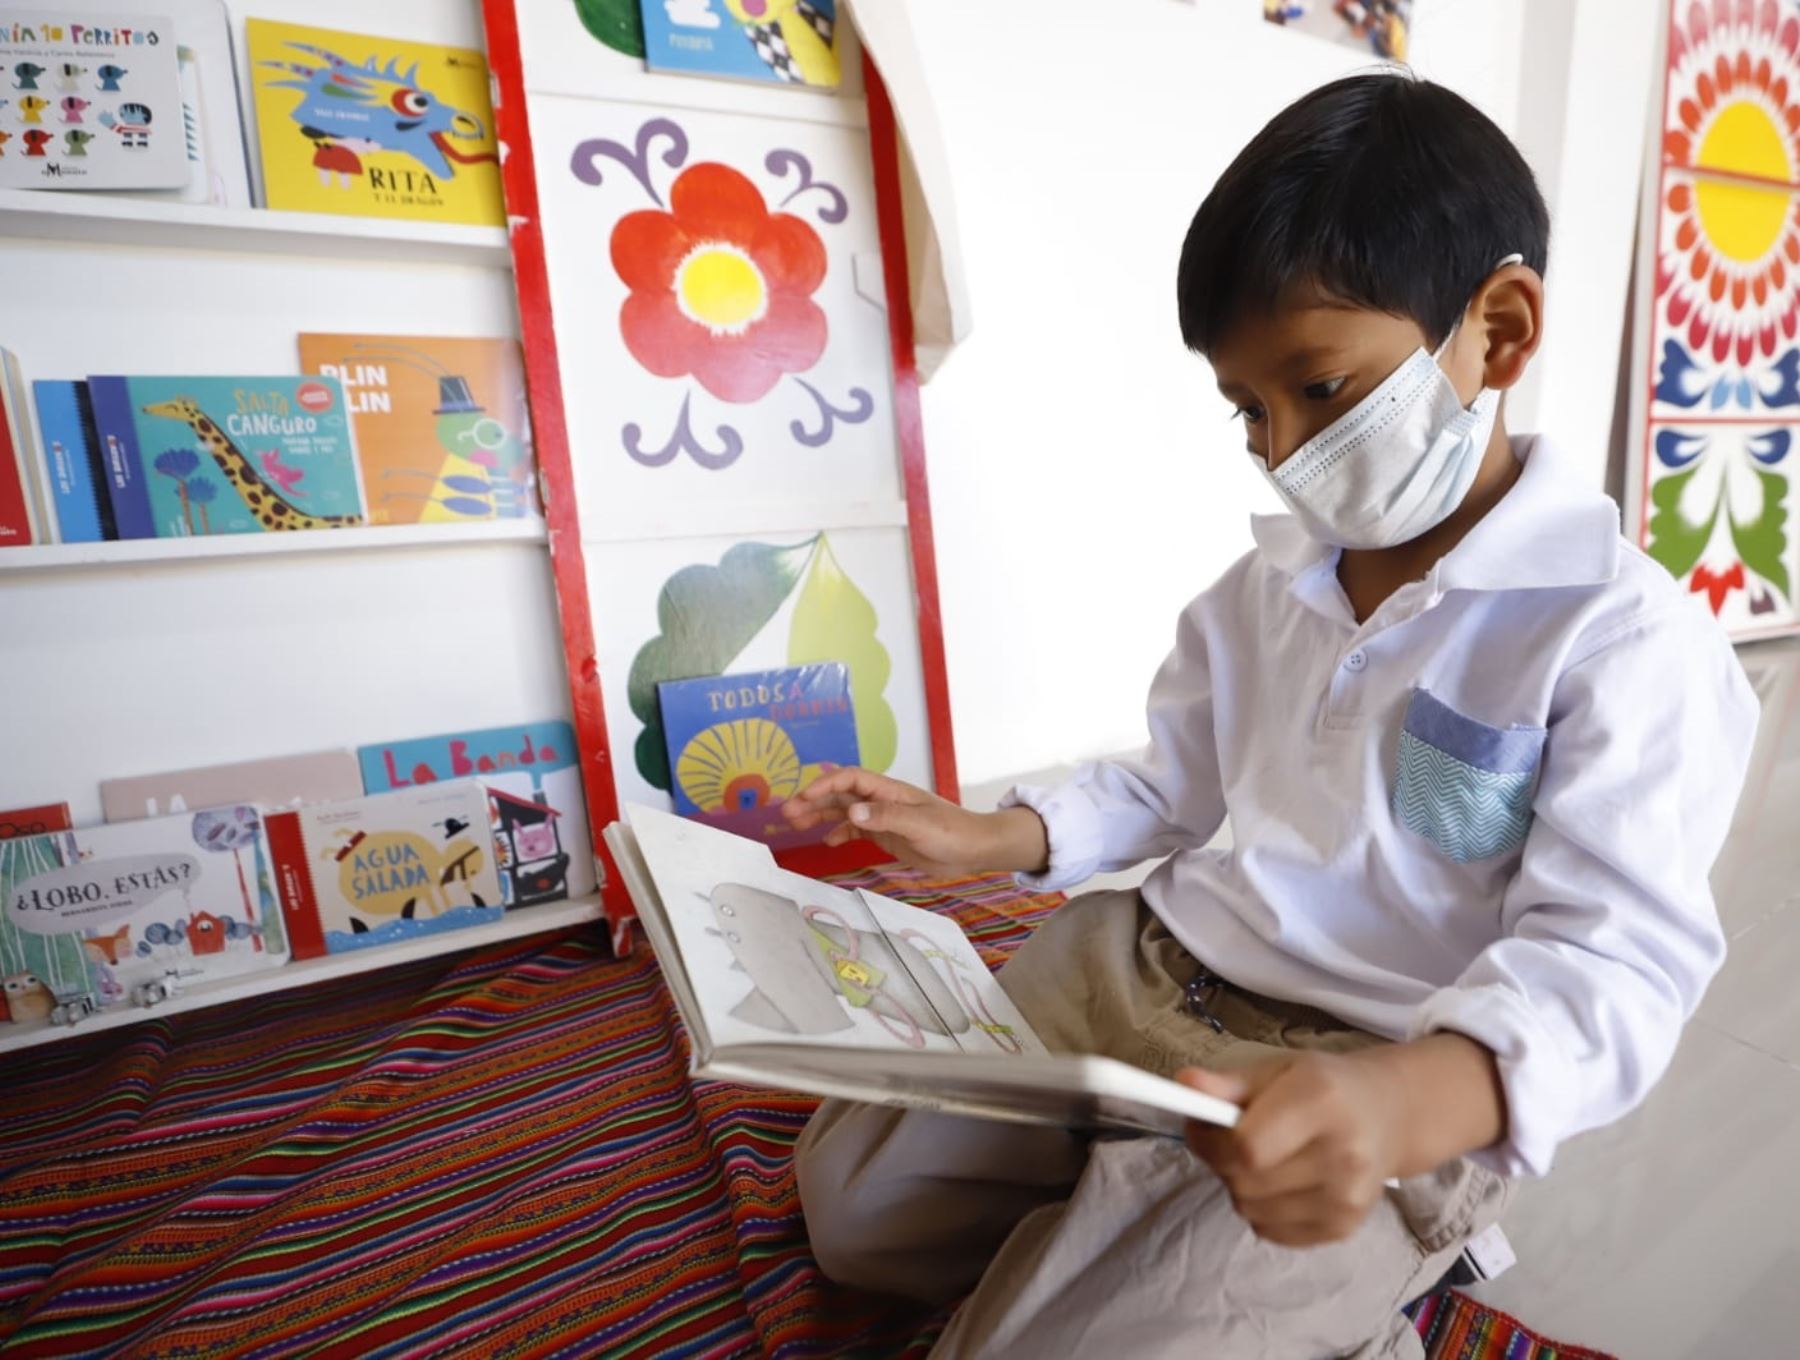 Espacios de lectura son importantes para el desarrollo cognitivo del niño. Foto: ANDINA/Difusión